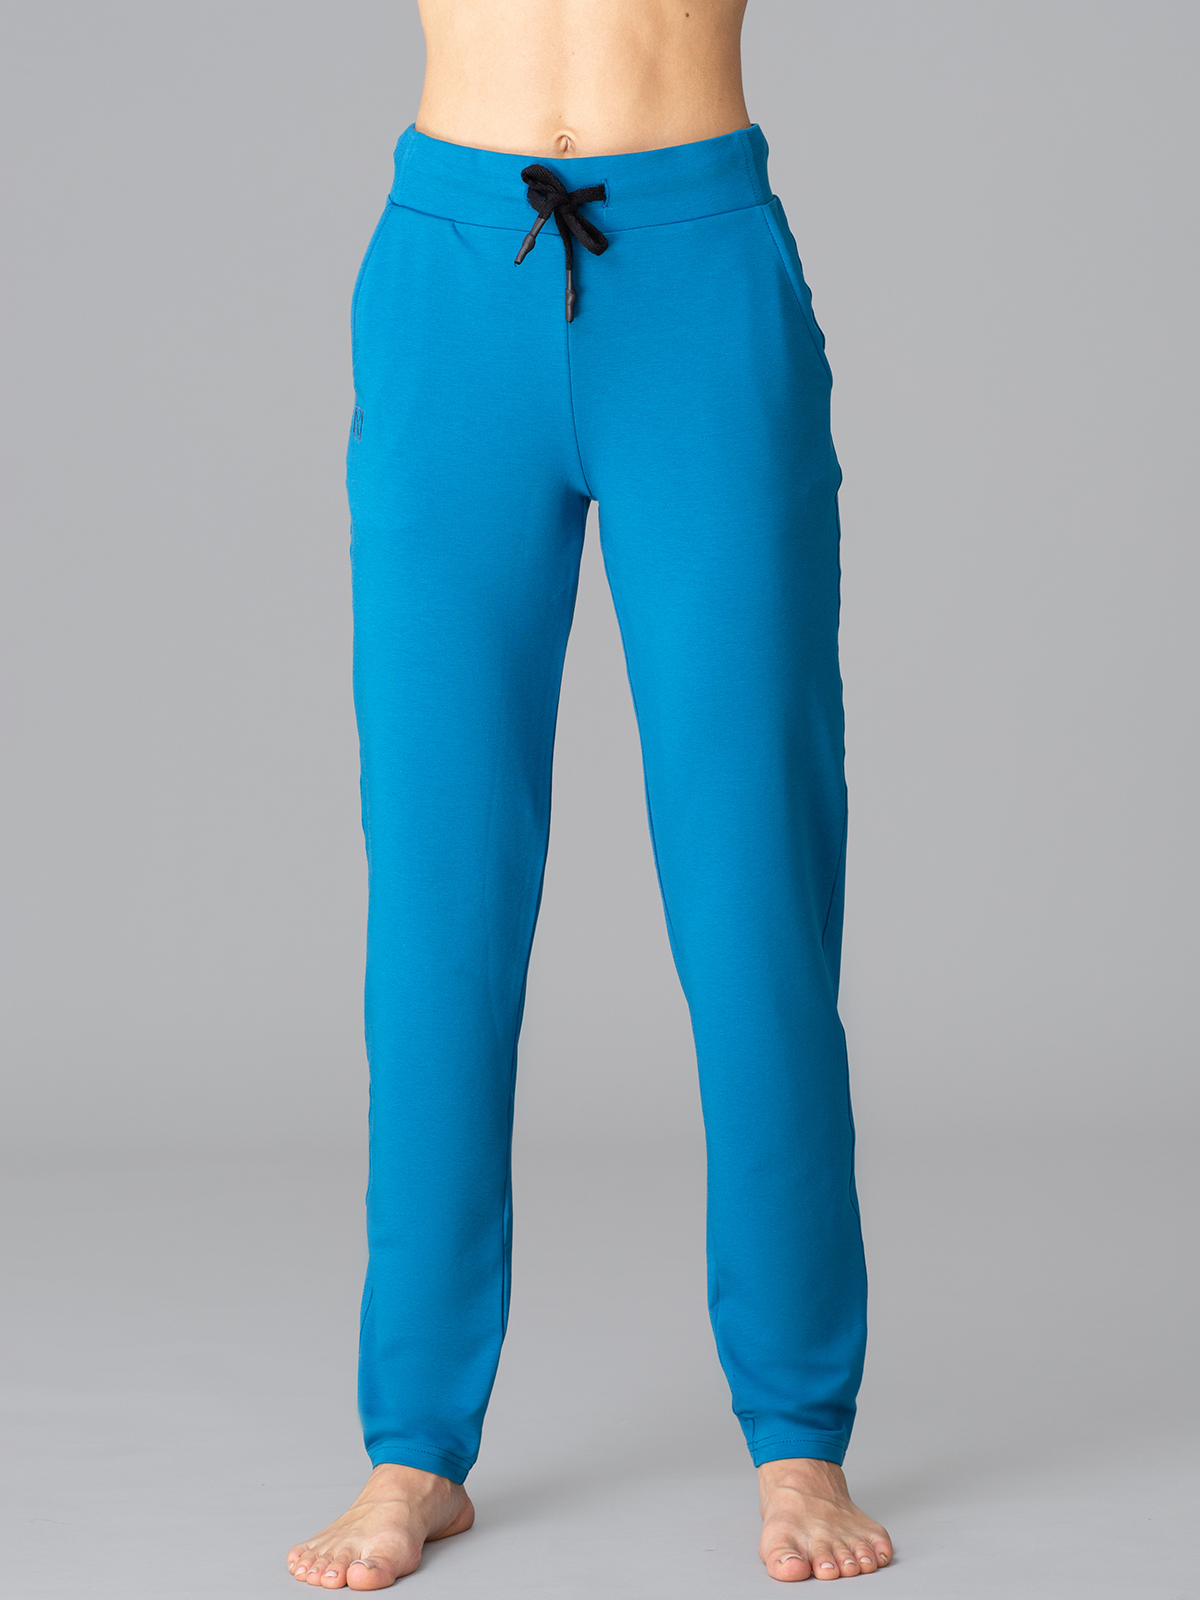 Брюки Oxouno OXO 2385-413 спортивные брюки размер XL, голубой (Голубой)